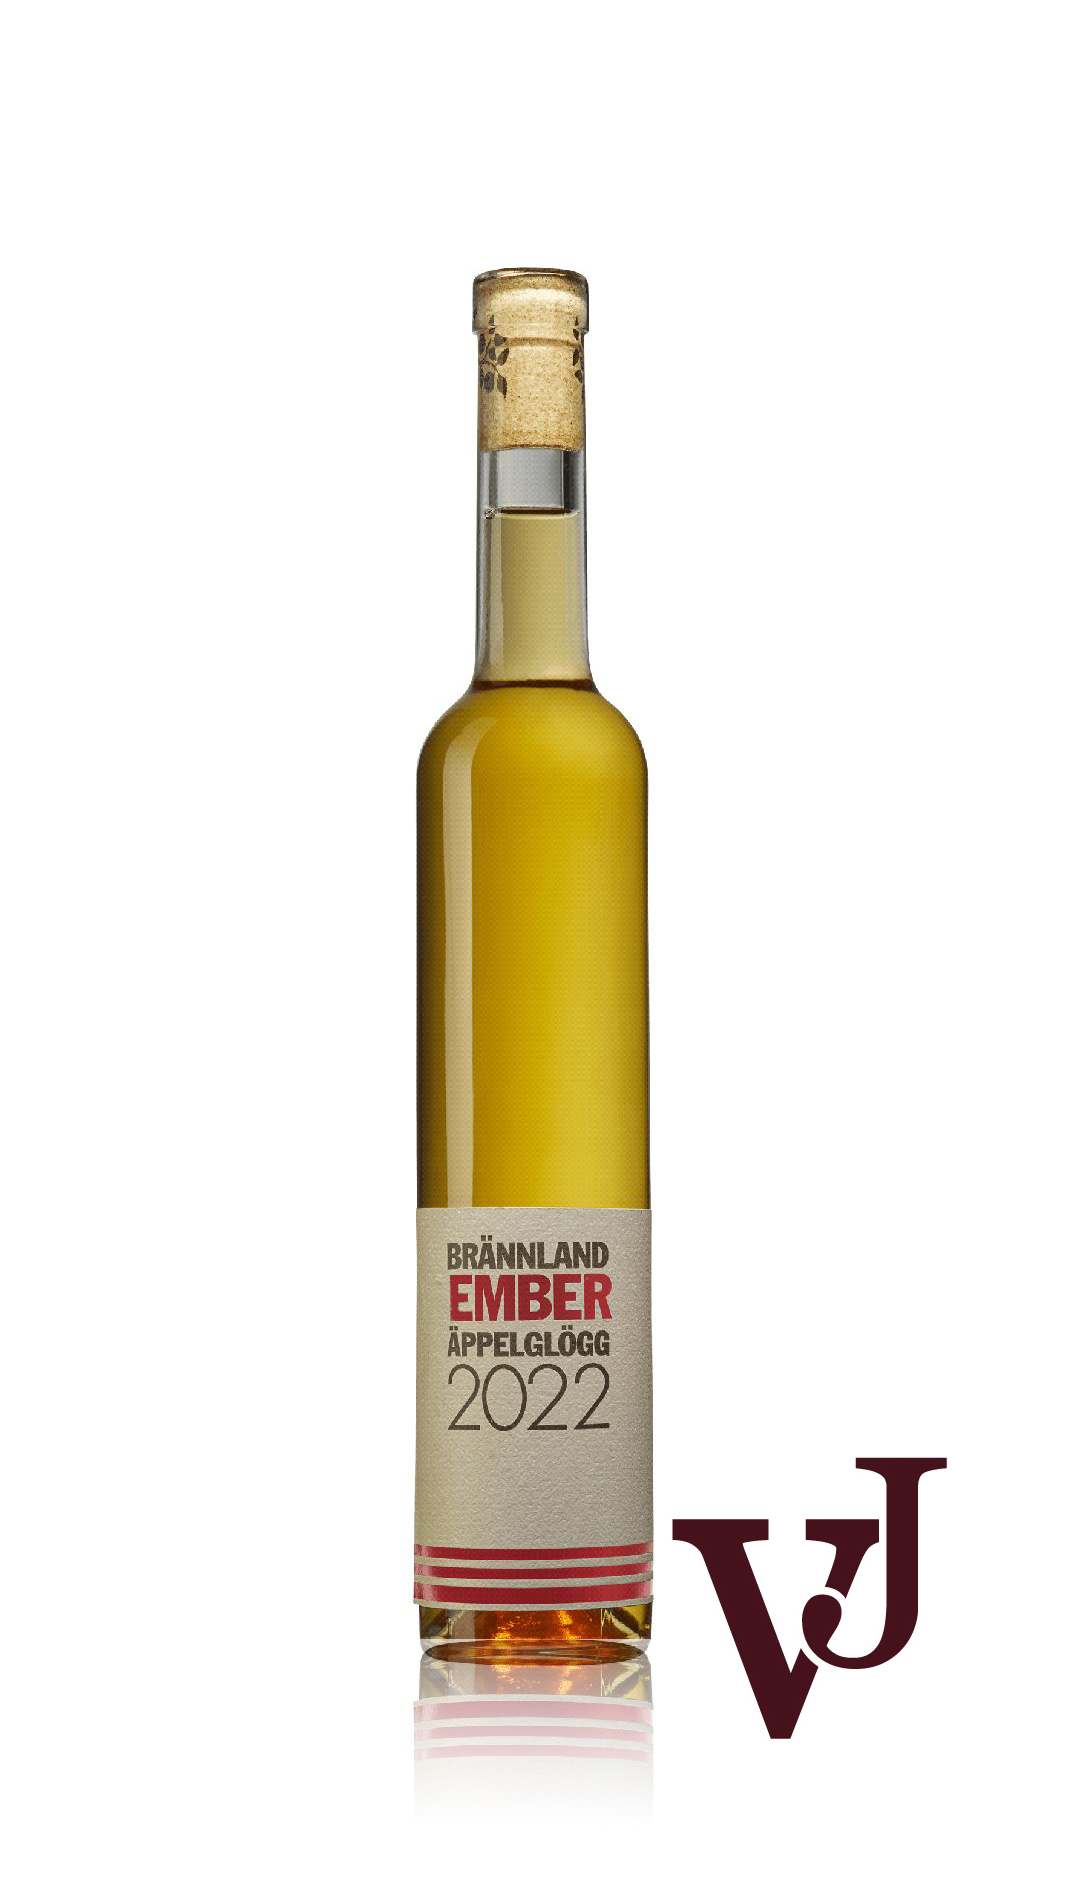 Övrigt Vin - Brännland Ember Äppelglögg 2022 artikel nummer 1020502 från producenten Brännland Iscider från Sverige.